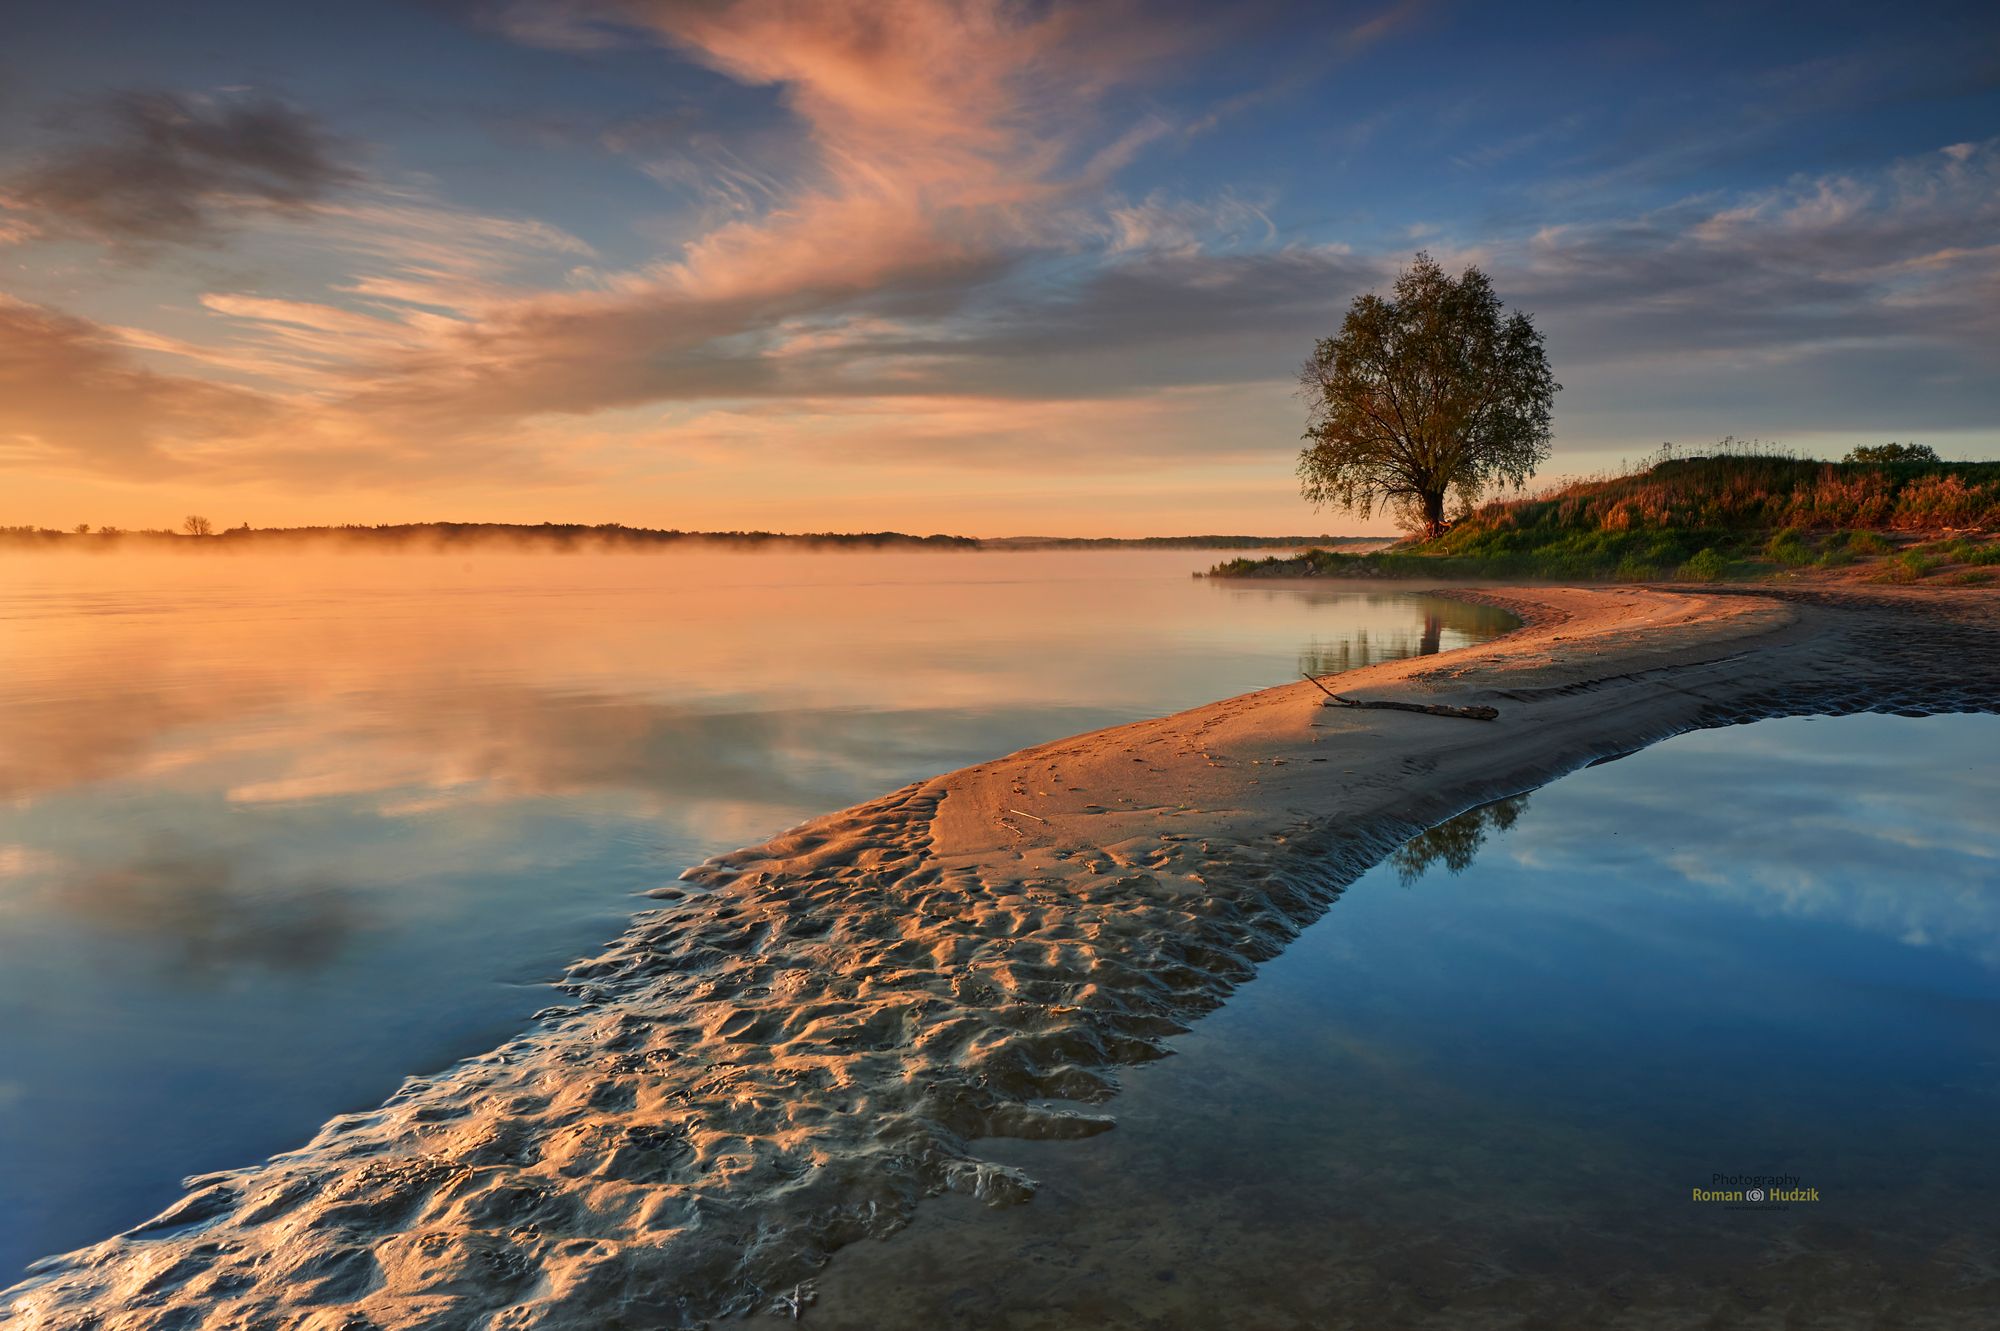 Vistula, river, landscape, water, clouds, sunrise, sunset, sand, tree,, Hudzik Roman